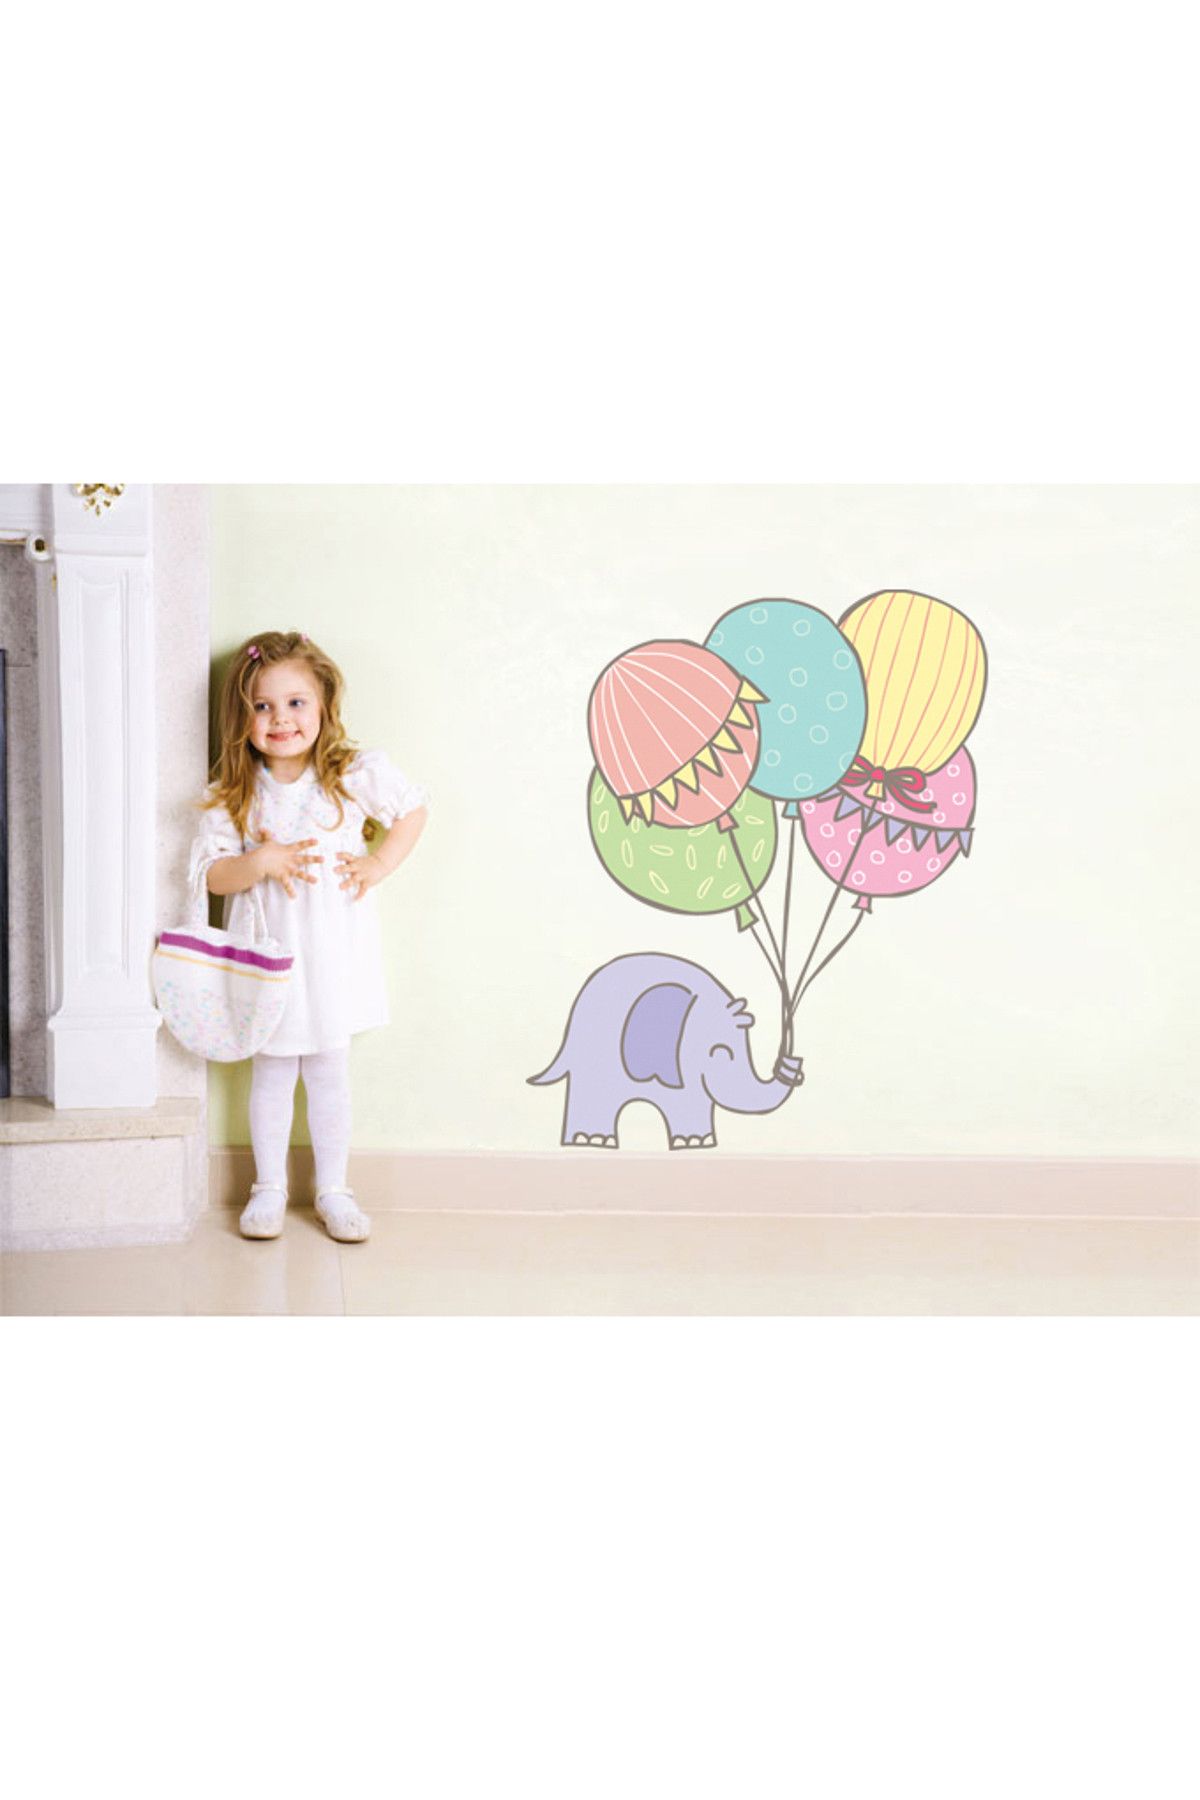 Tilki Dünyası Şirin Fil ve Balonlar Duvar Sticker 3071